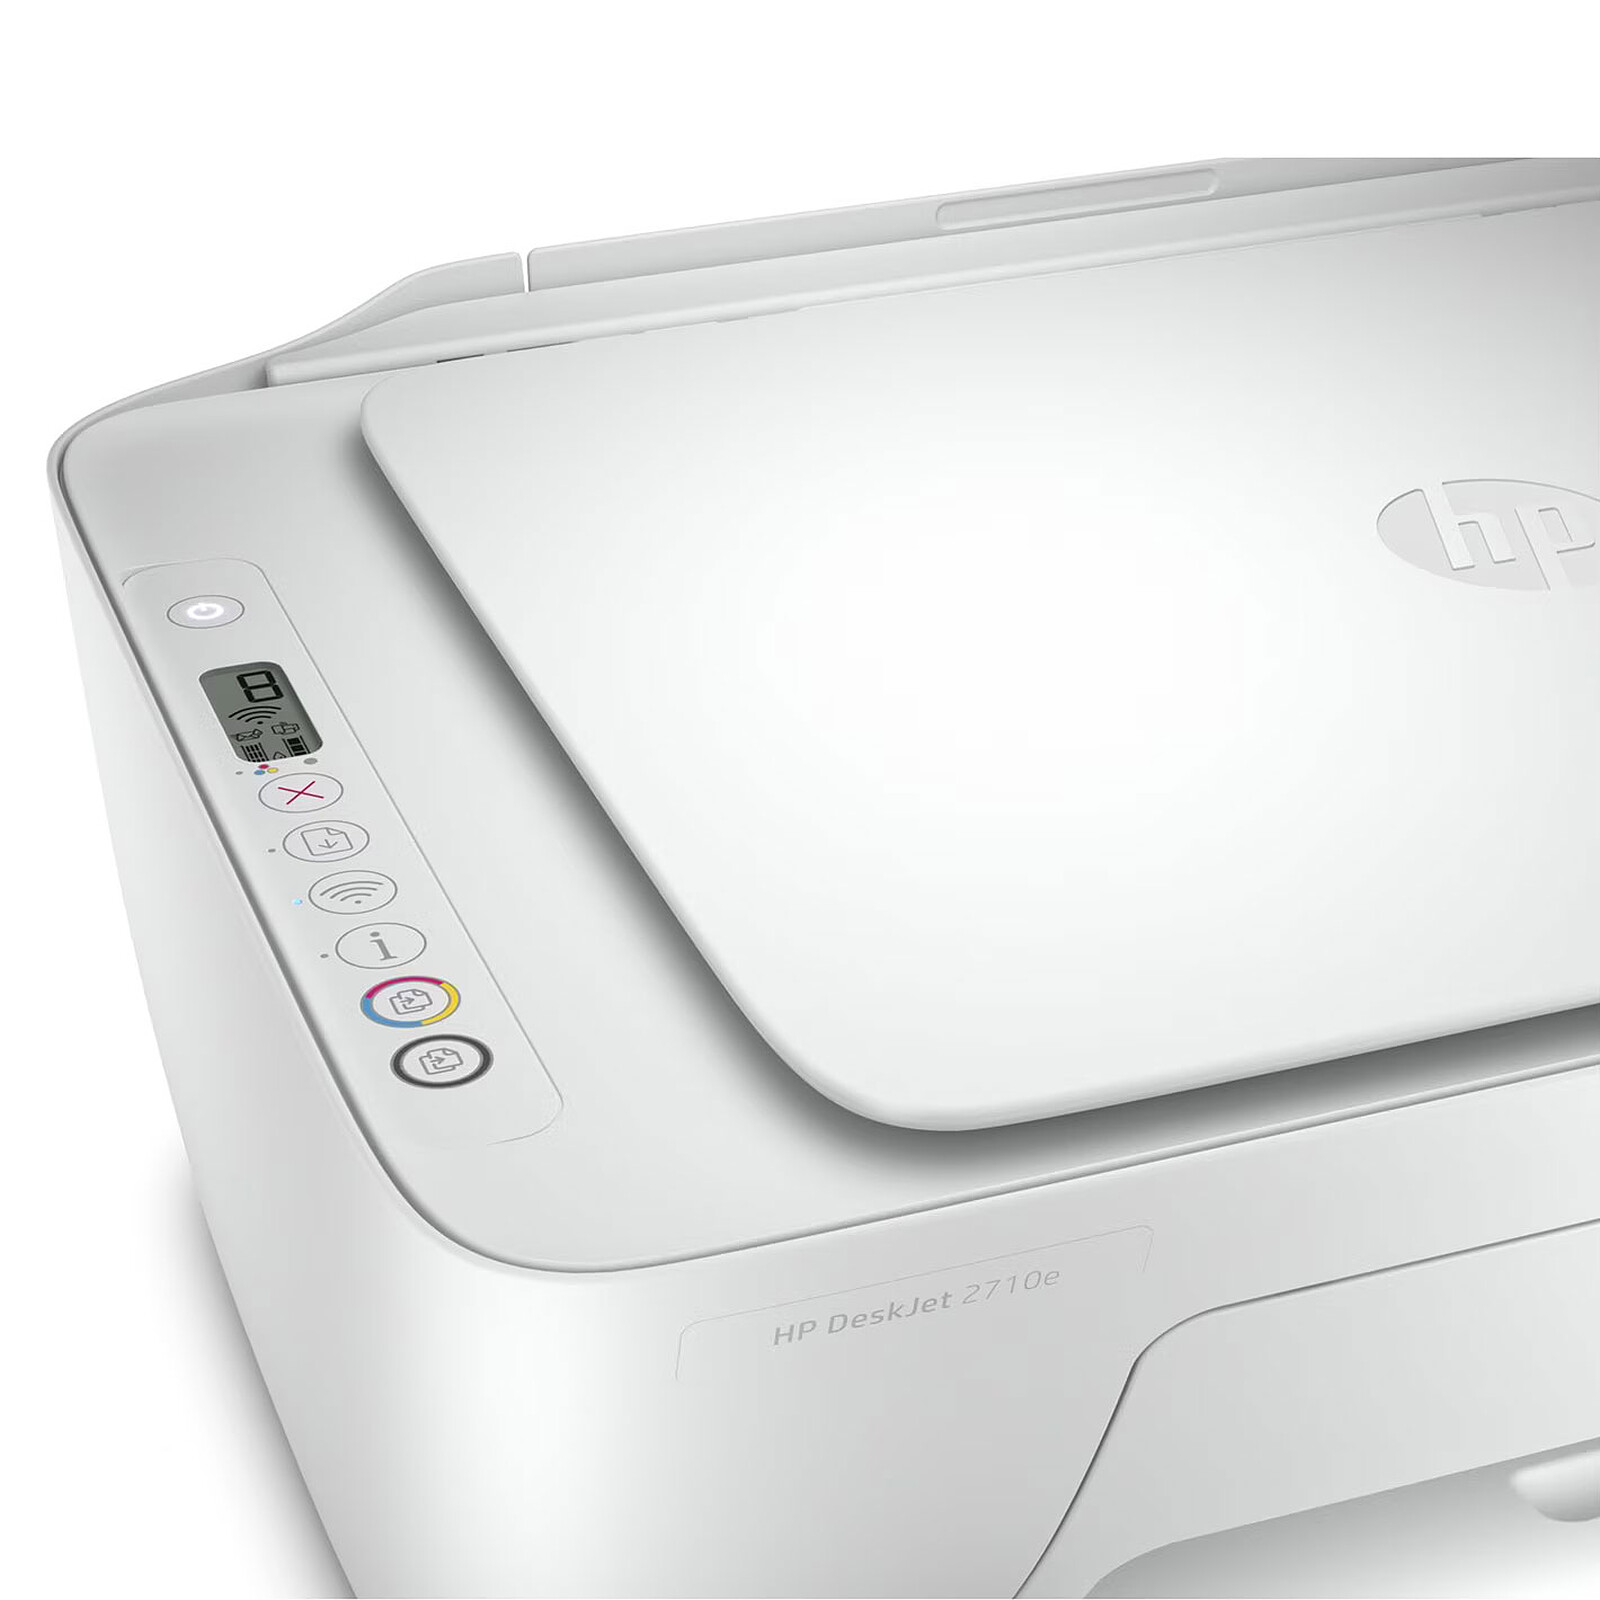 Hp cartouche 305 Couleur Compatible avec les imprimantes jet d'encre HP  Deskjet 2710, 2720 à prix pas cher